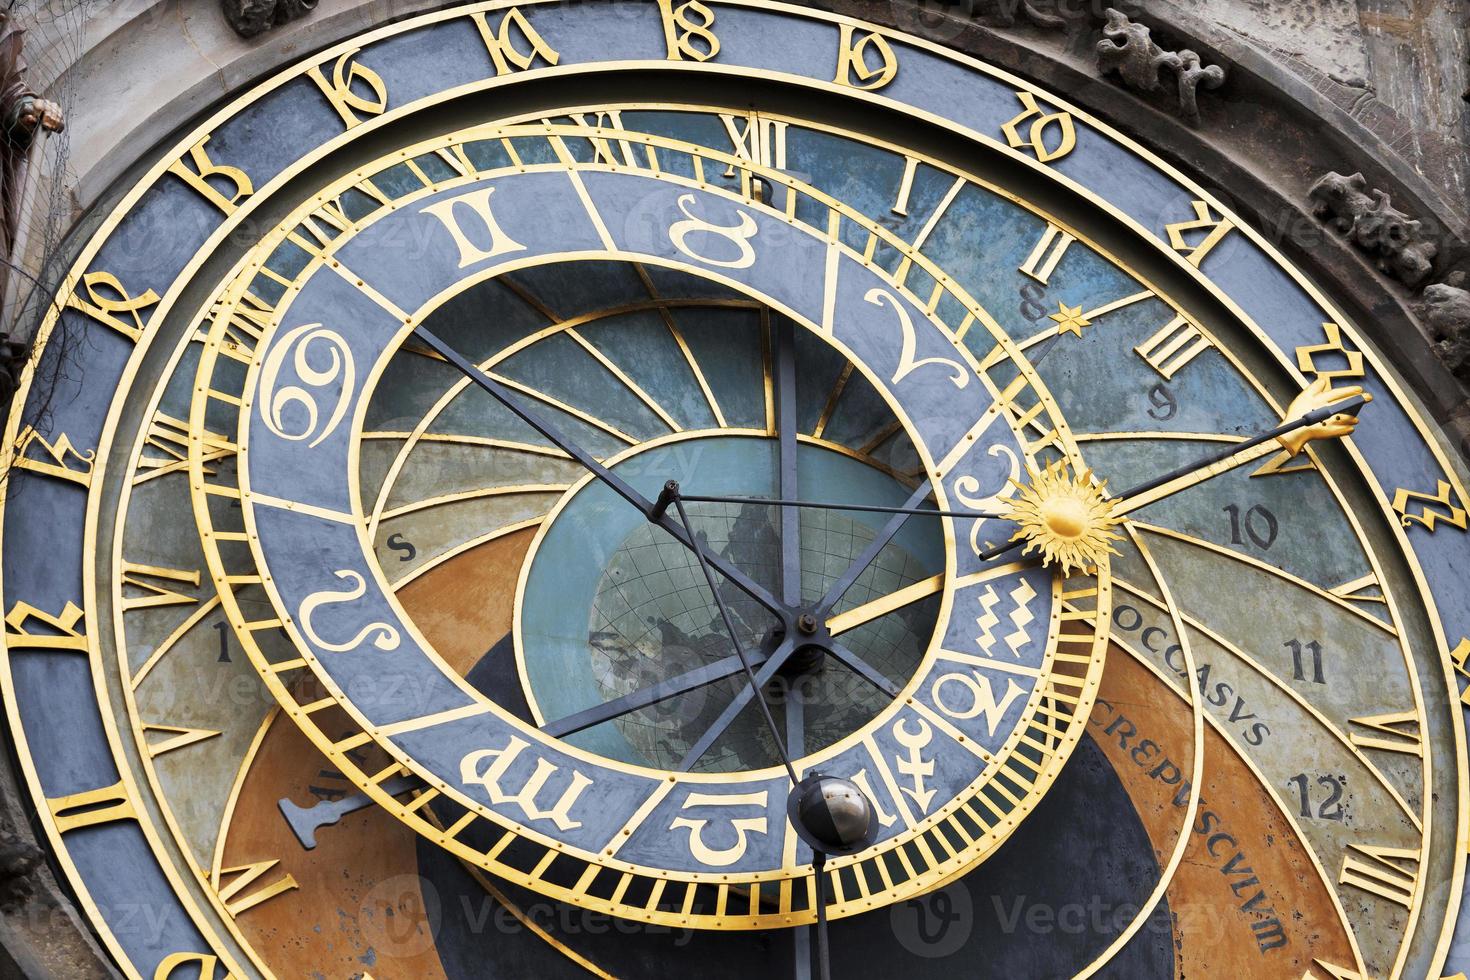 Detail der historischen mittelalterlichen astronomischen Uhr in Prag am alten Rathaus, Tschechien? foto